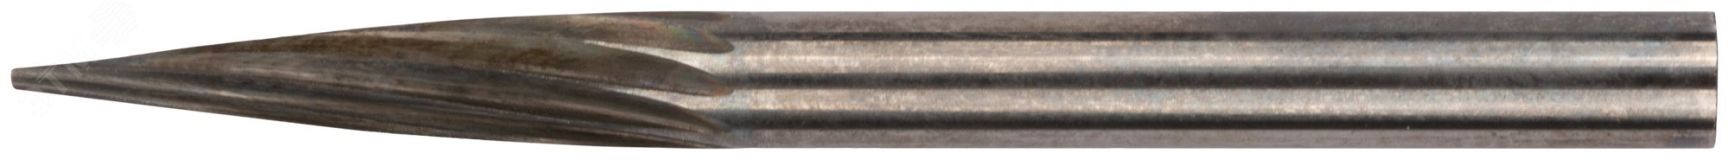 Шарошка карбидная Профи, штифт 3 мм (мини), коническая 36586 FIT